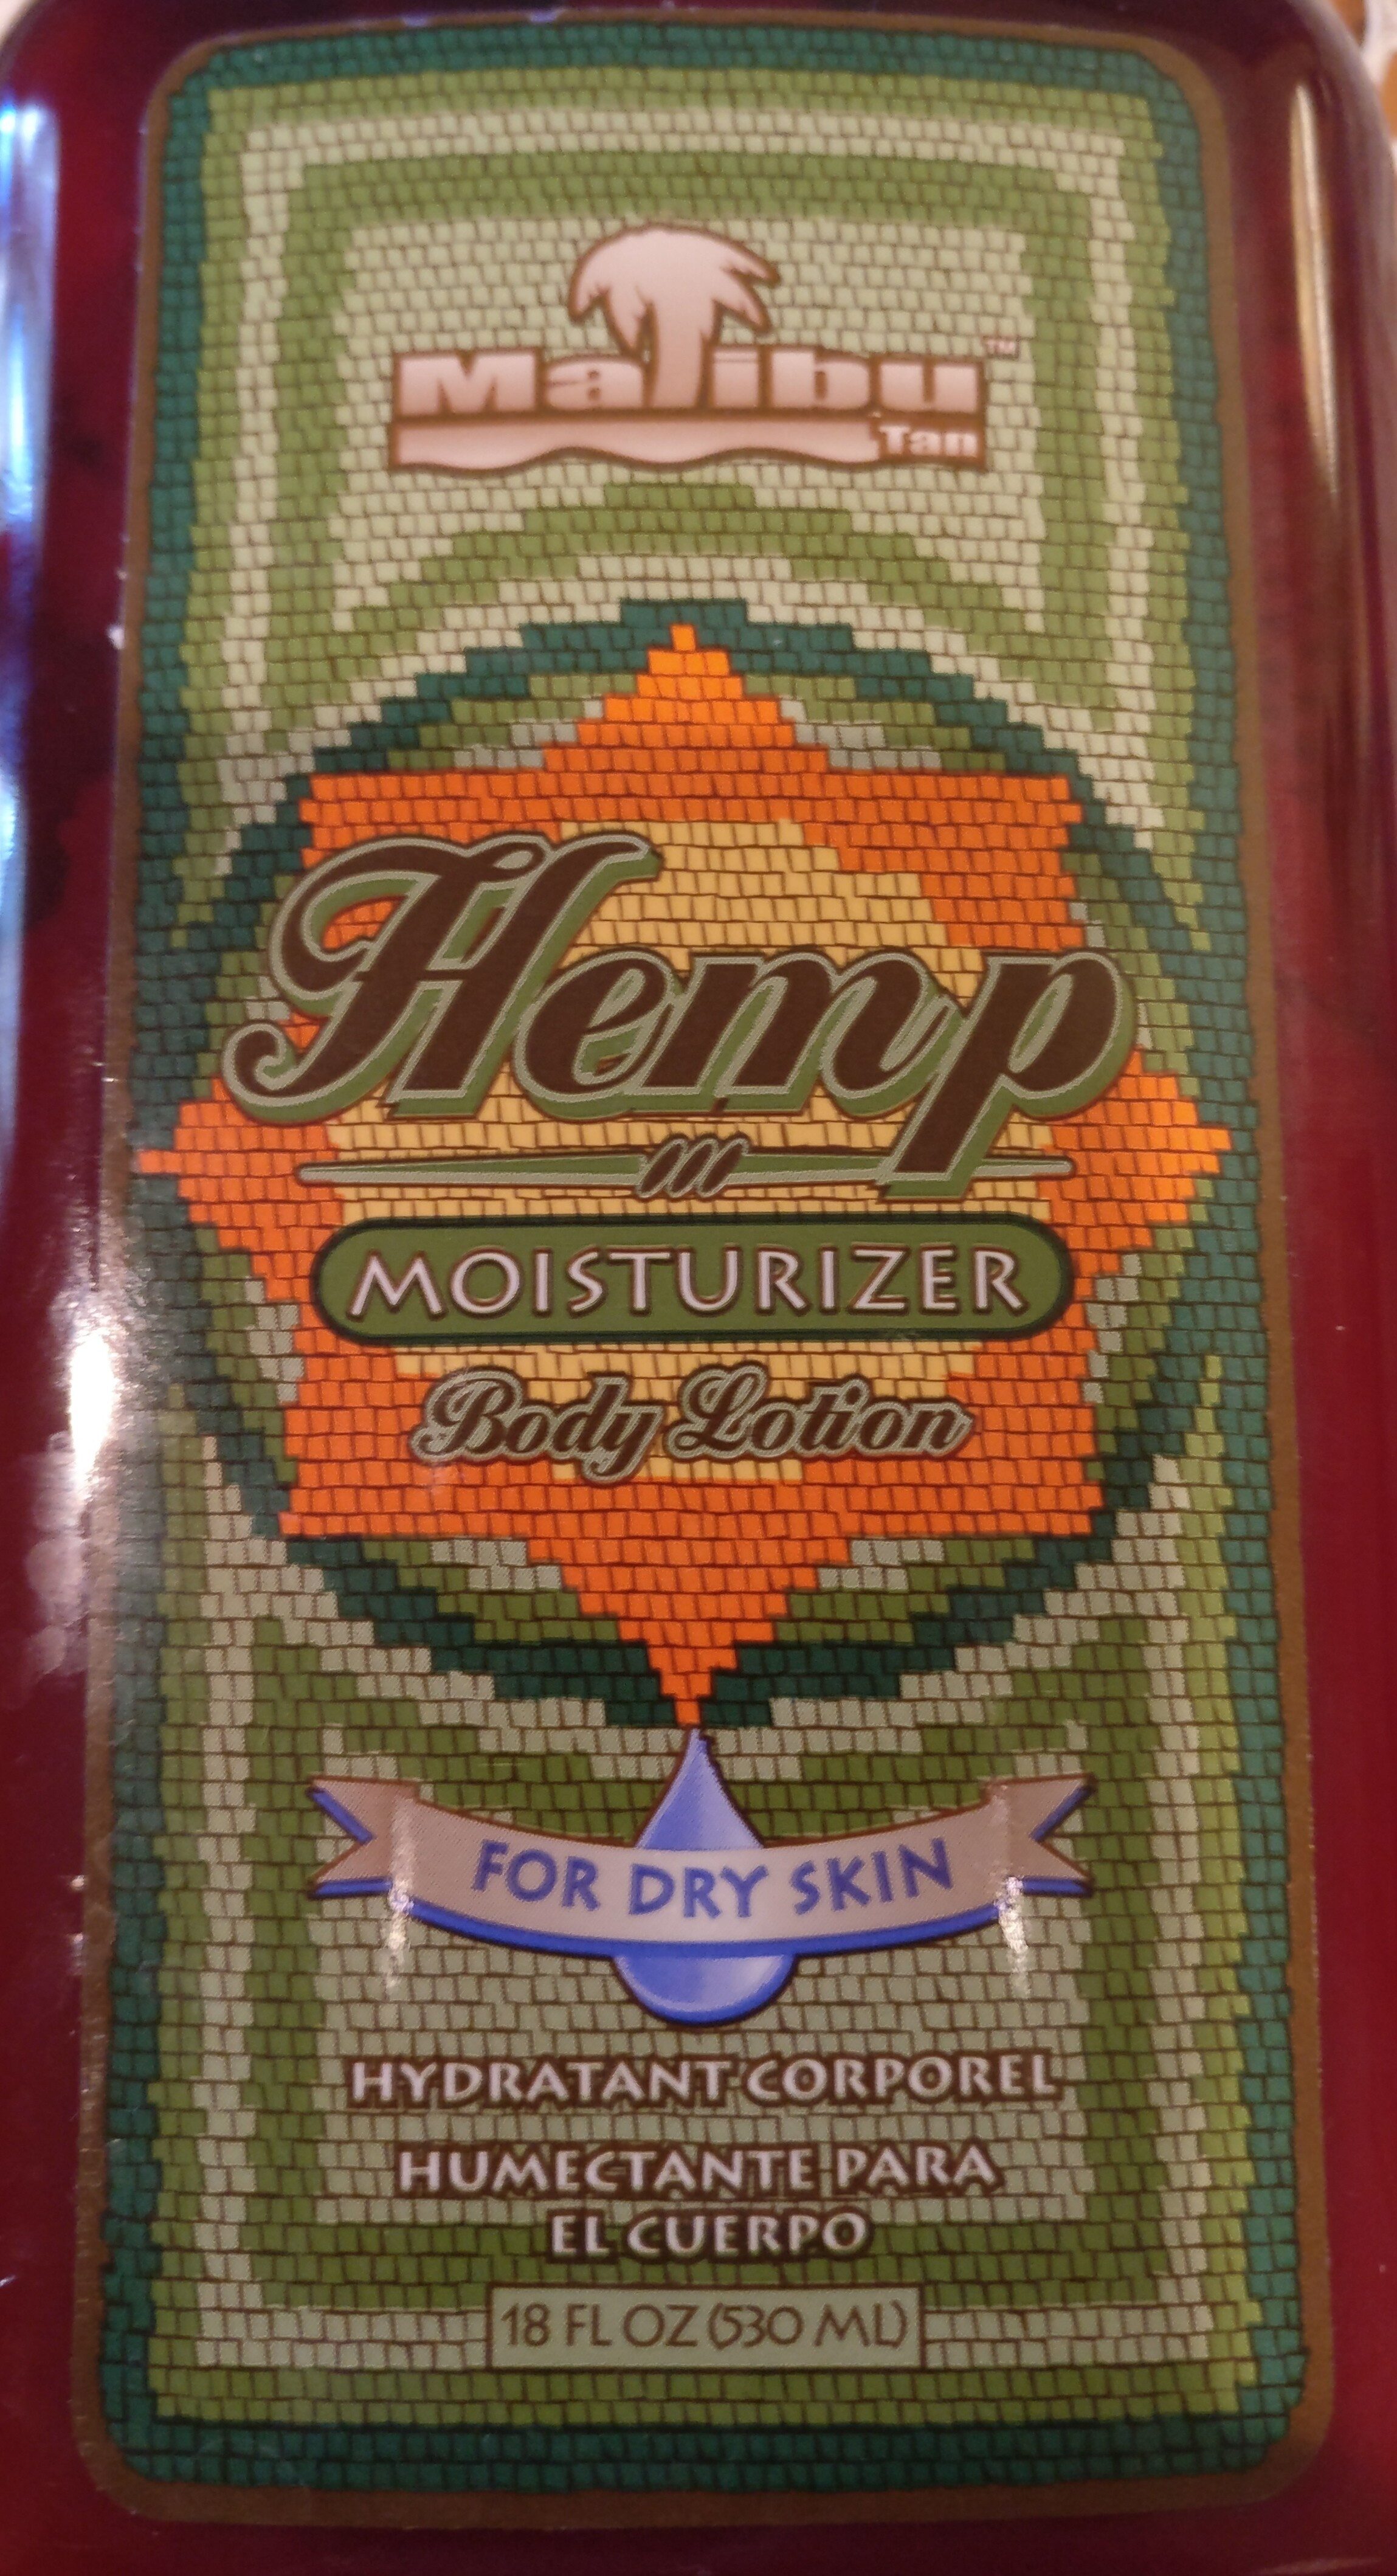 malibu tan hemp moisturizer - מוצר - en